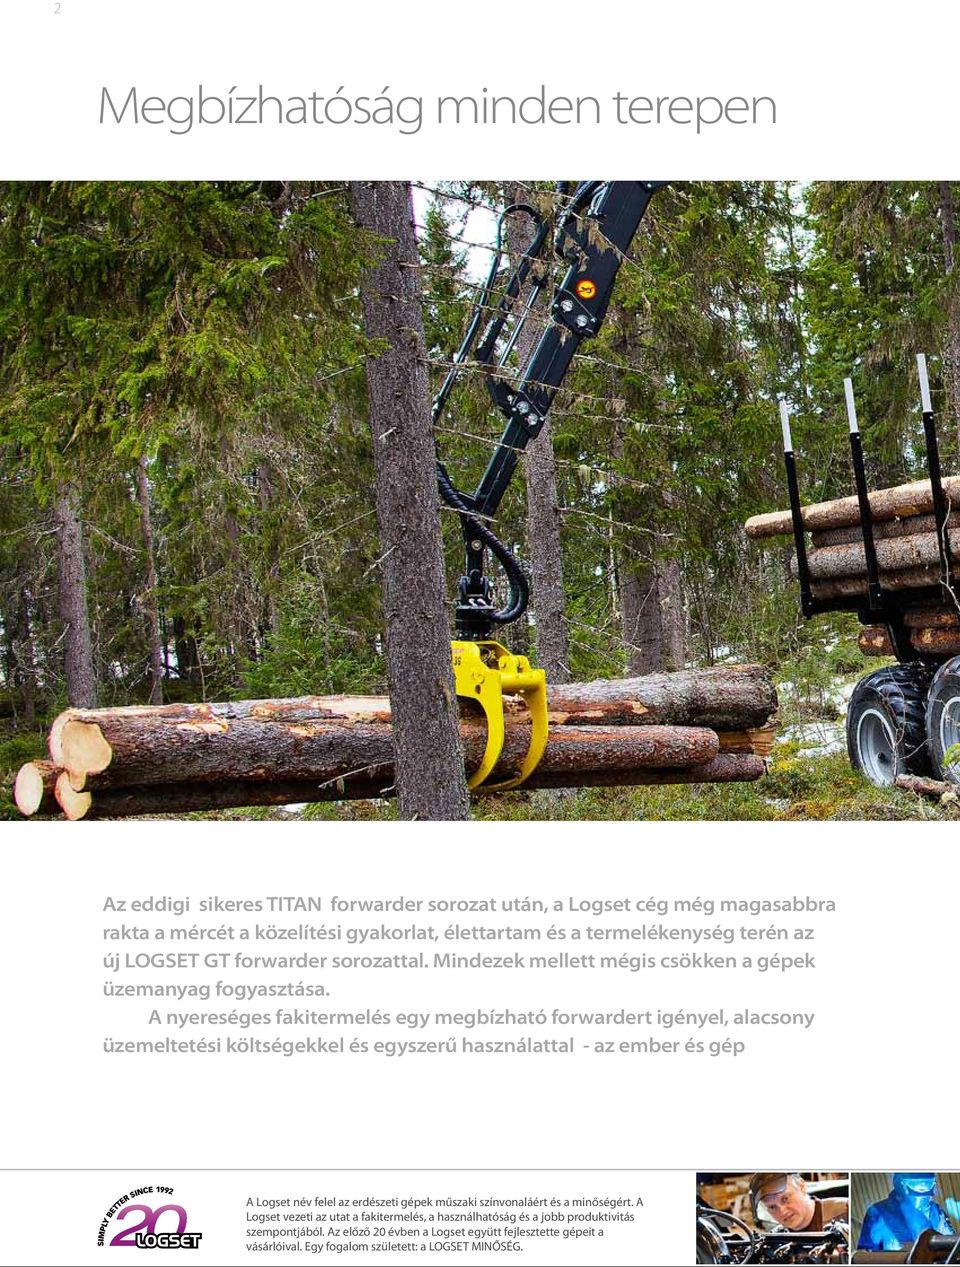 A nyereséges fakitermelés egy megbízható forwardert igényel, alacsony üzemeltetési költségekkel és egyszerű használattal - az ember és gép A Logset név felel az erdészeti